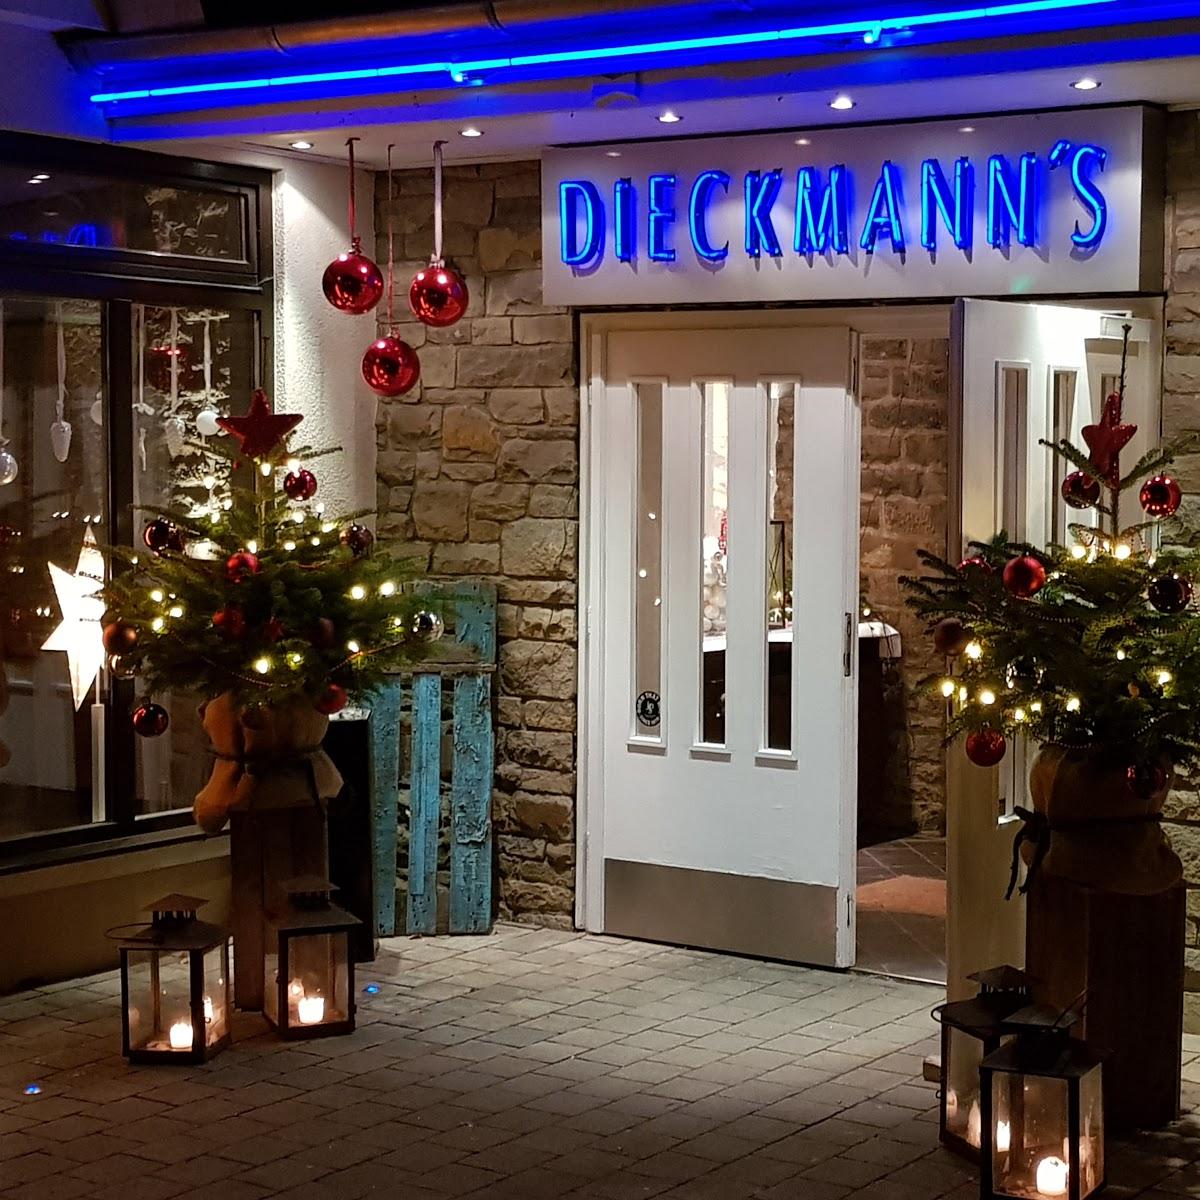 Restaurant "Dieckmann